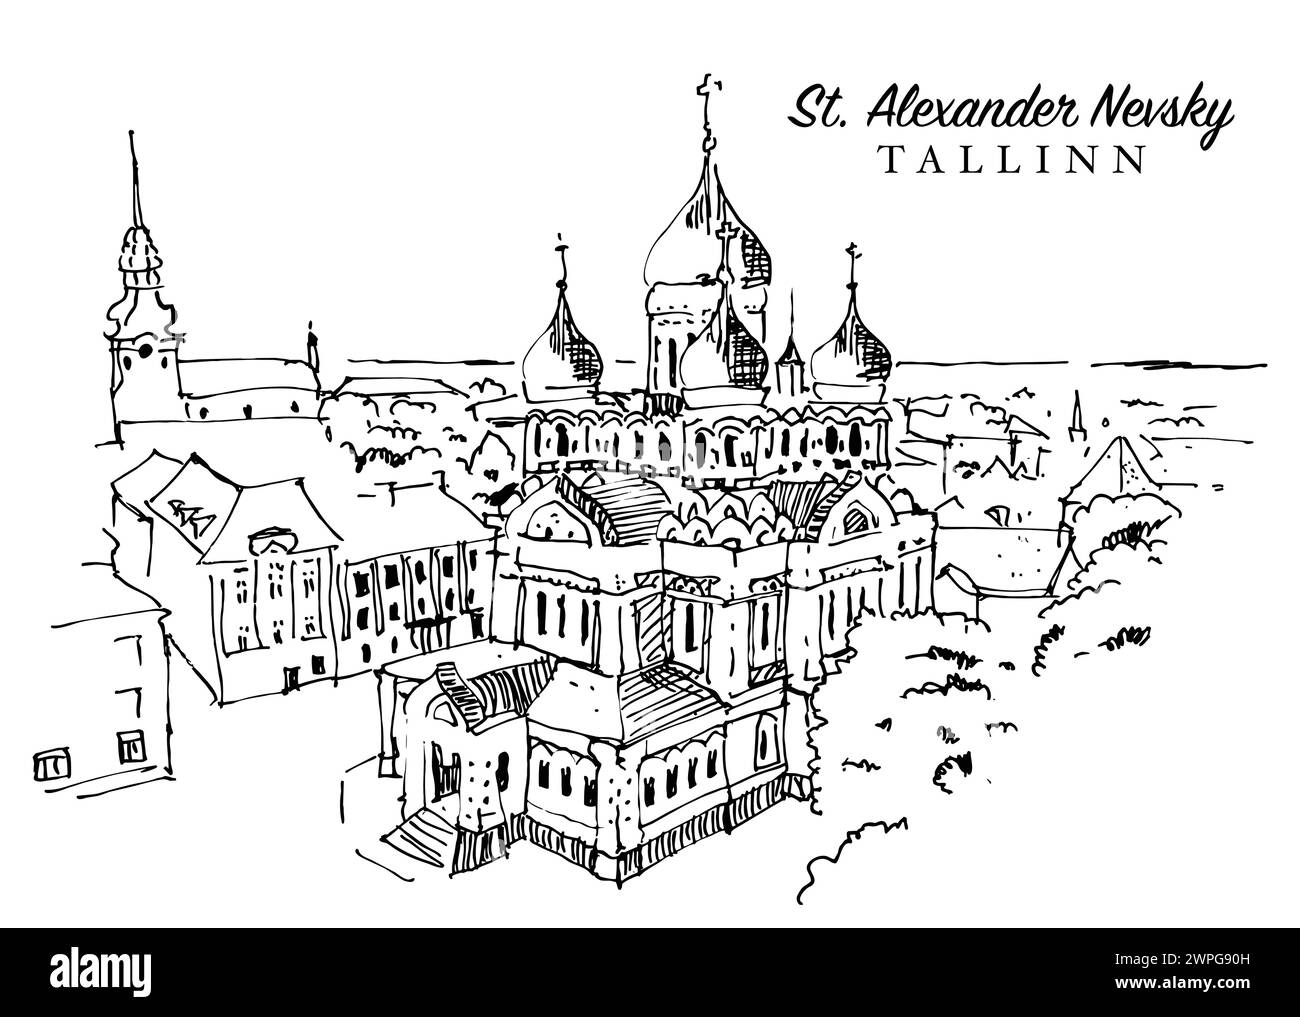 Illustration vectorielle dessinée à la main d'esquisse de réussi Cathédrale Alexandre Nevsky à Tallinn, Estonie Illustration de Vecteur